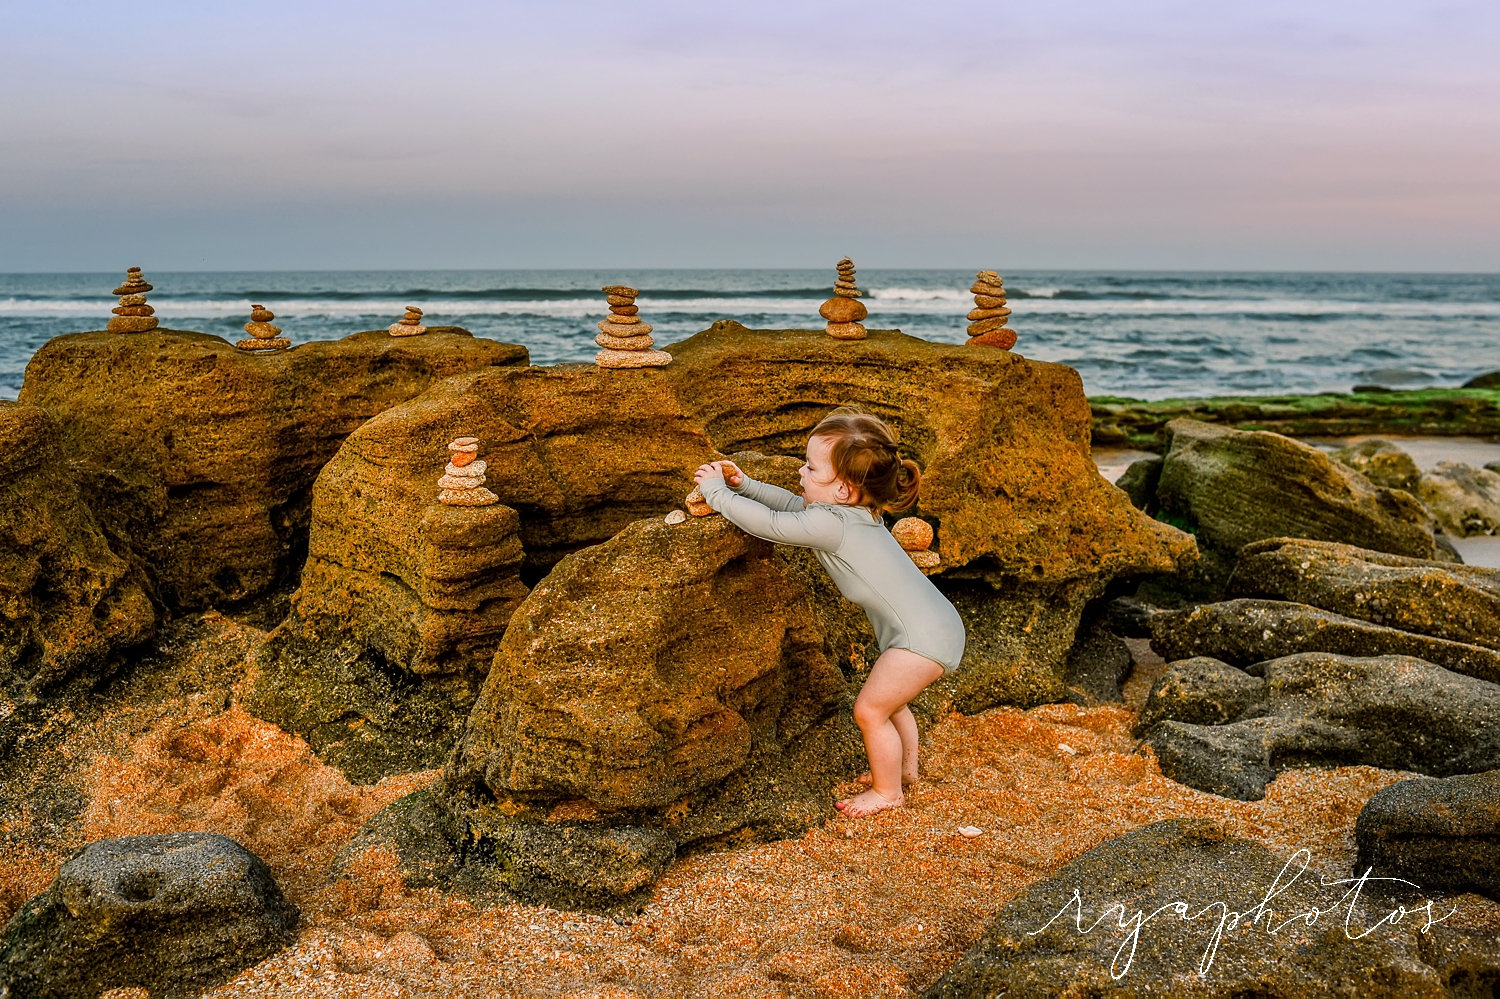 little girl stacking rocks on a Florida beach, rocky Florida beaches, Ryaphotos